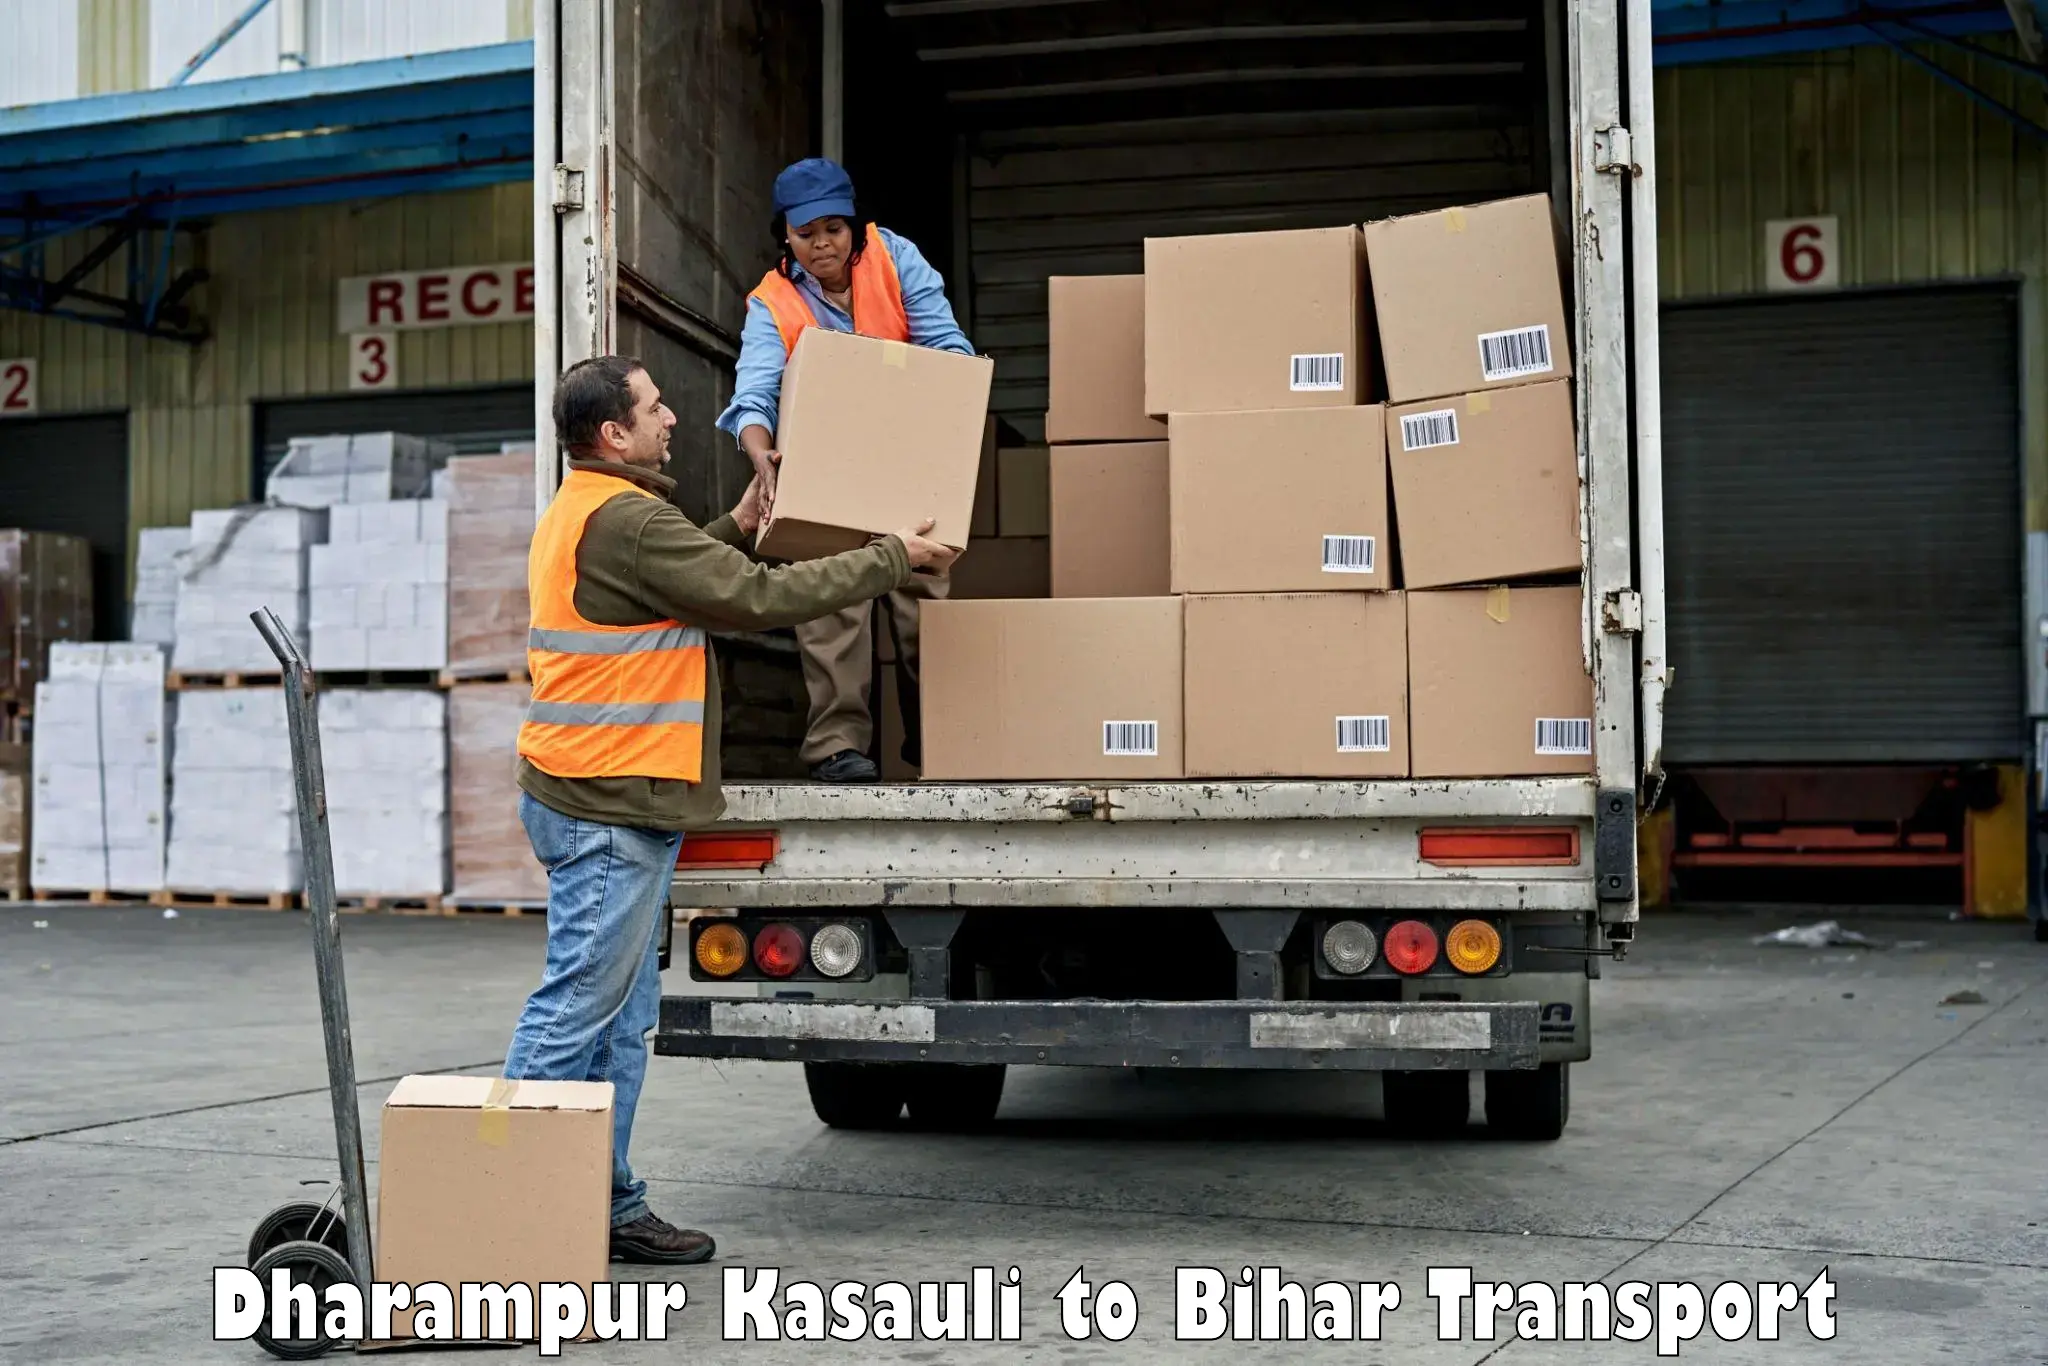 Land transport services Dharampur Kasauli to Bhorey